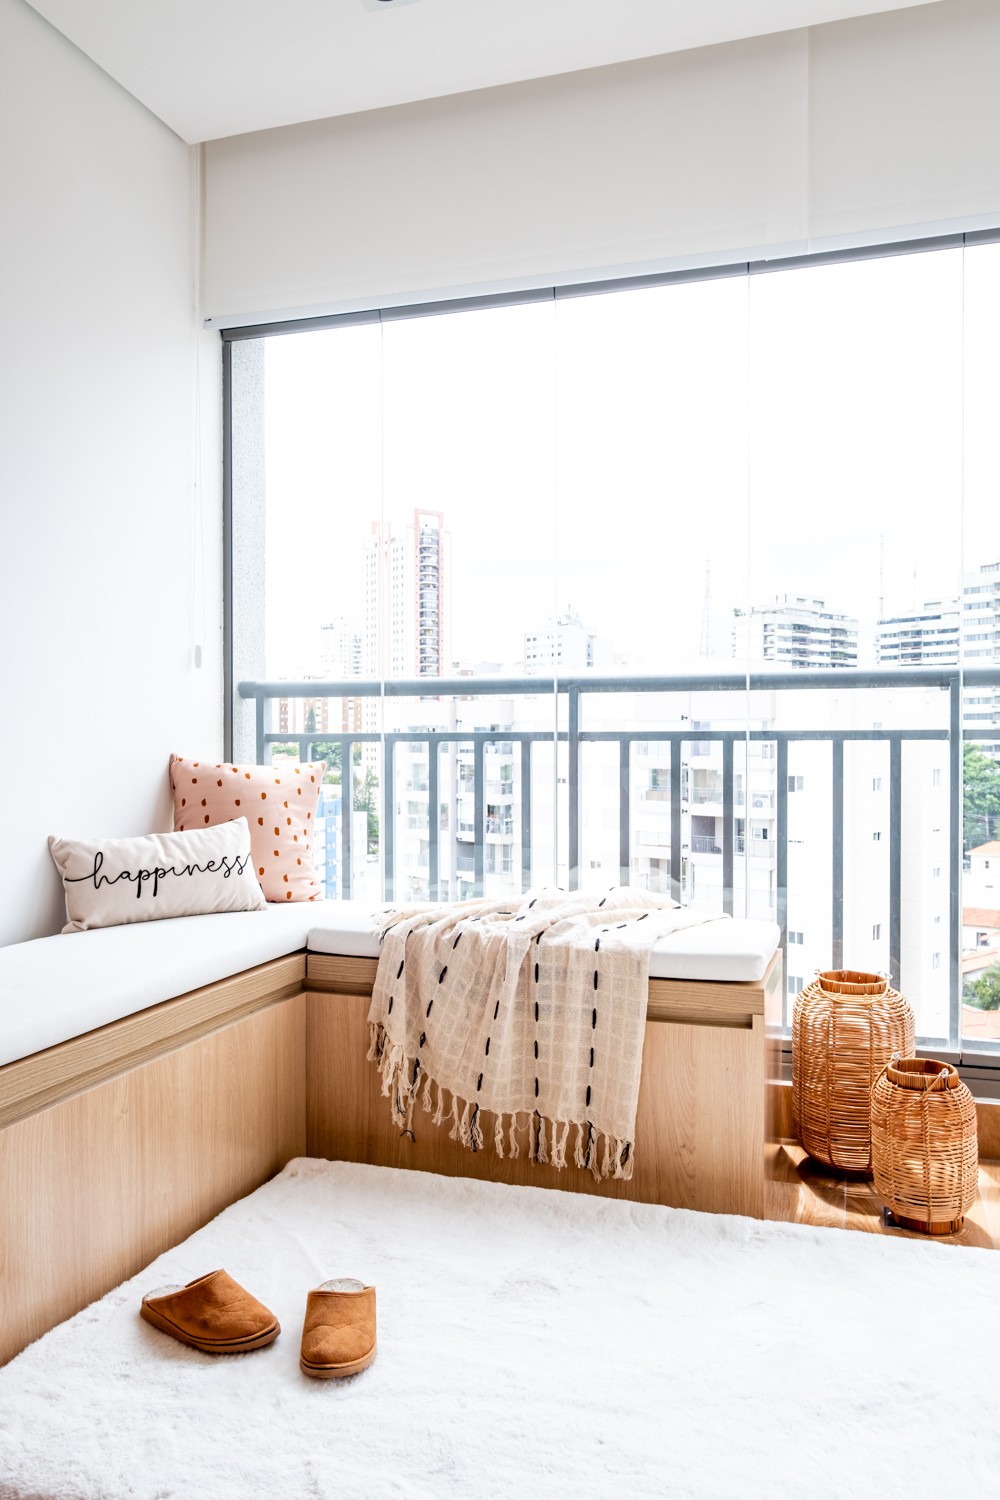 VARANDA | O banco da varanda permite contemplar a vista do apartamento (Foto: Nathalie Artaxo / Divulgação)